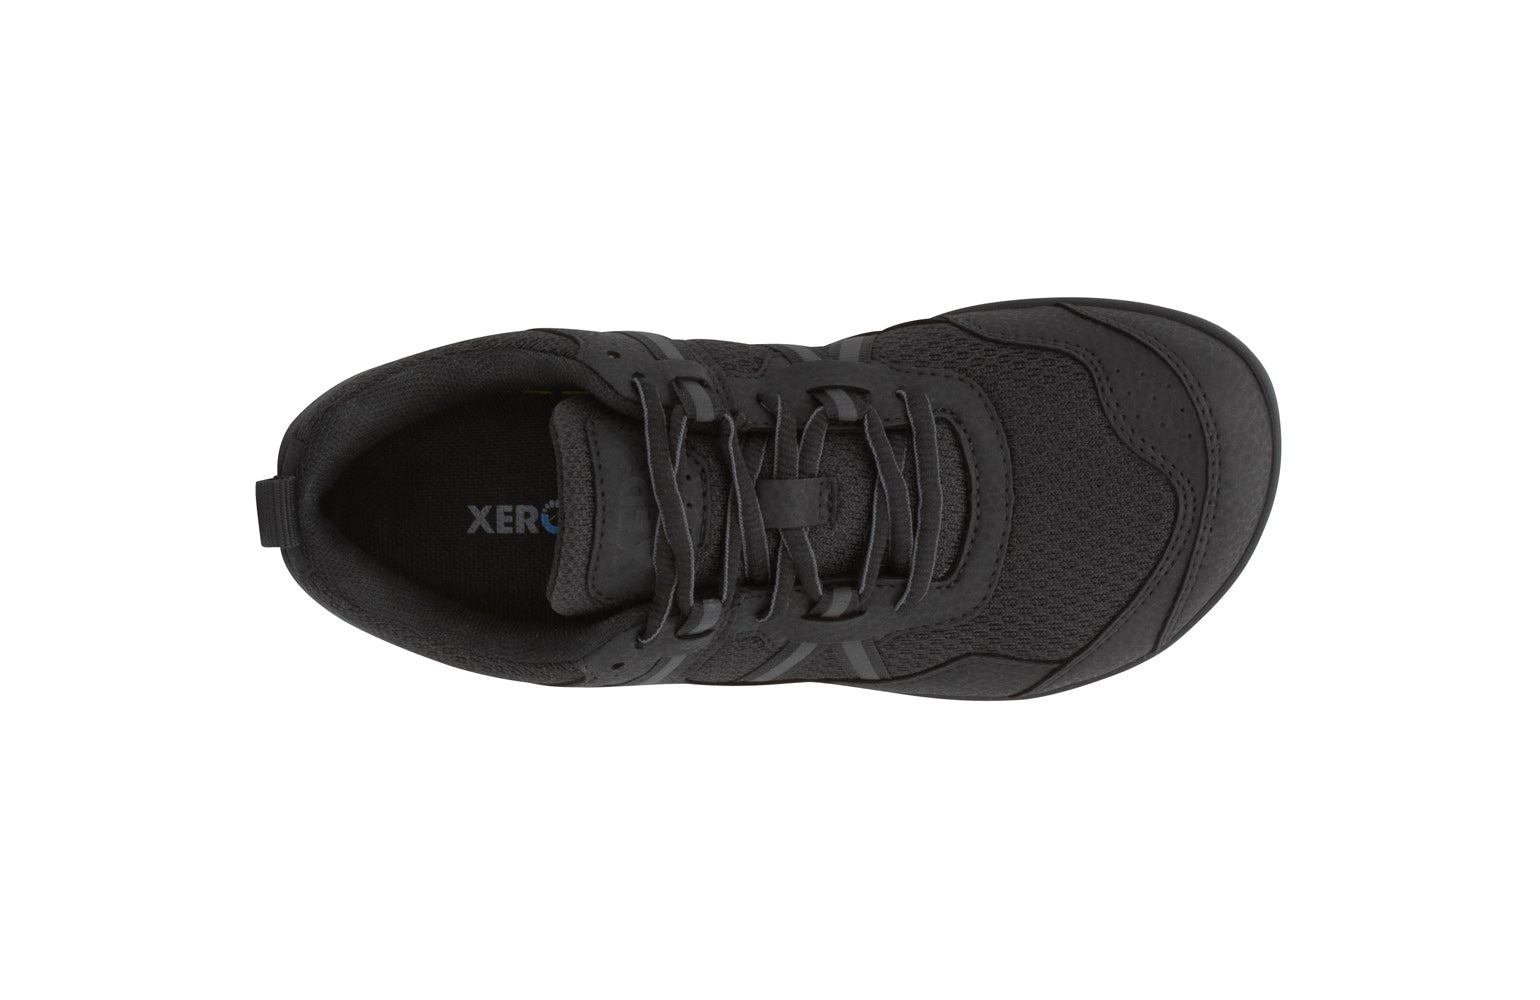 Xero Shoes Prio Kids barfods træningssko/sneakers til børn i farven black, top